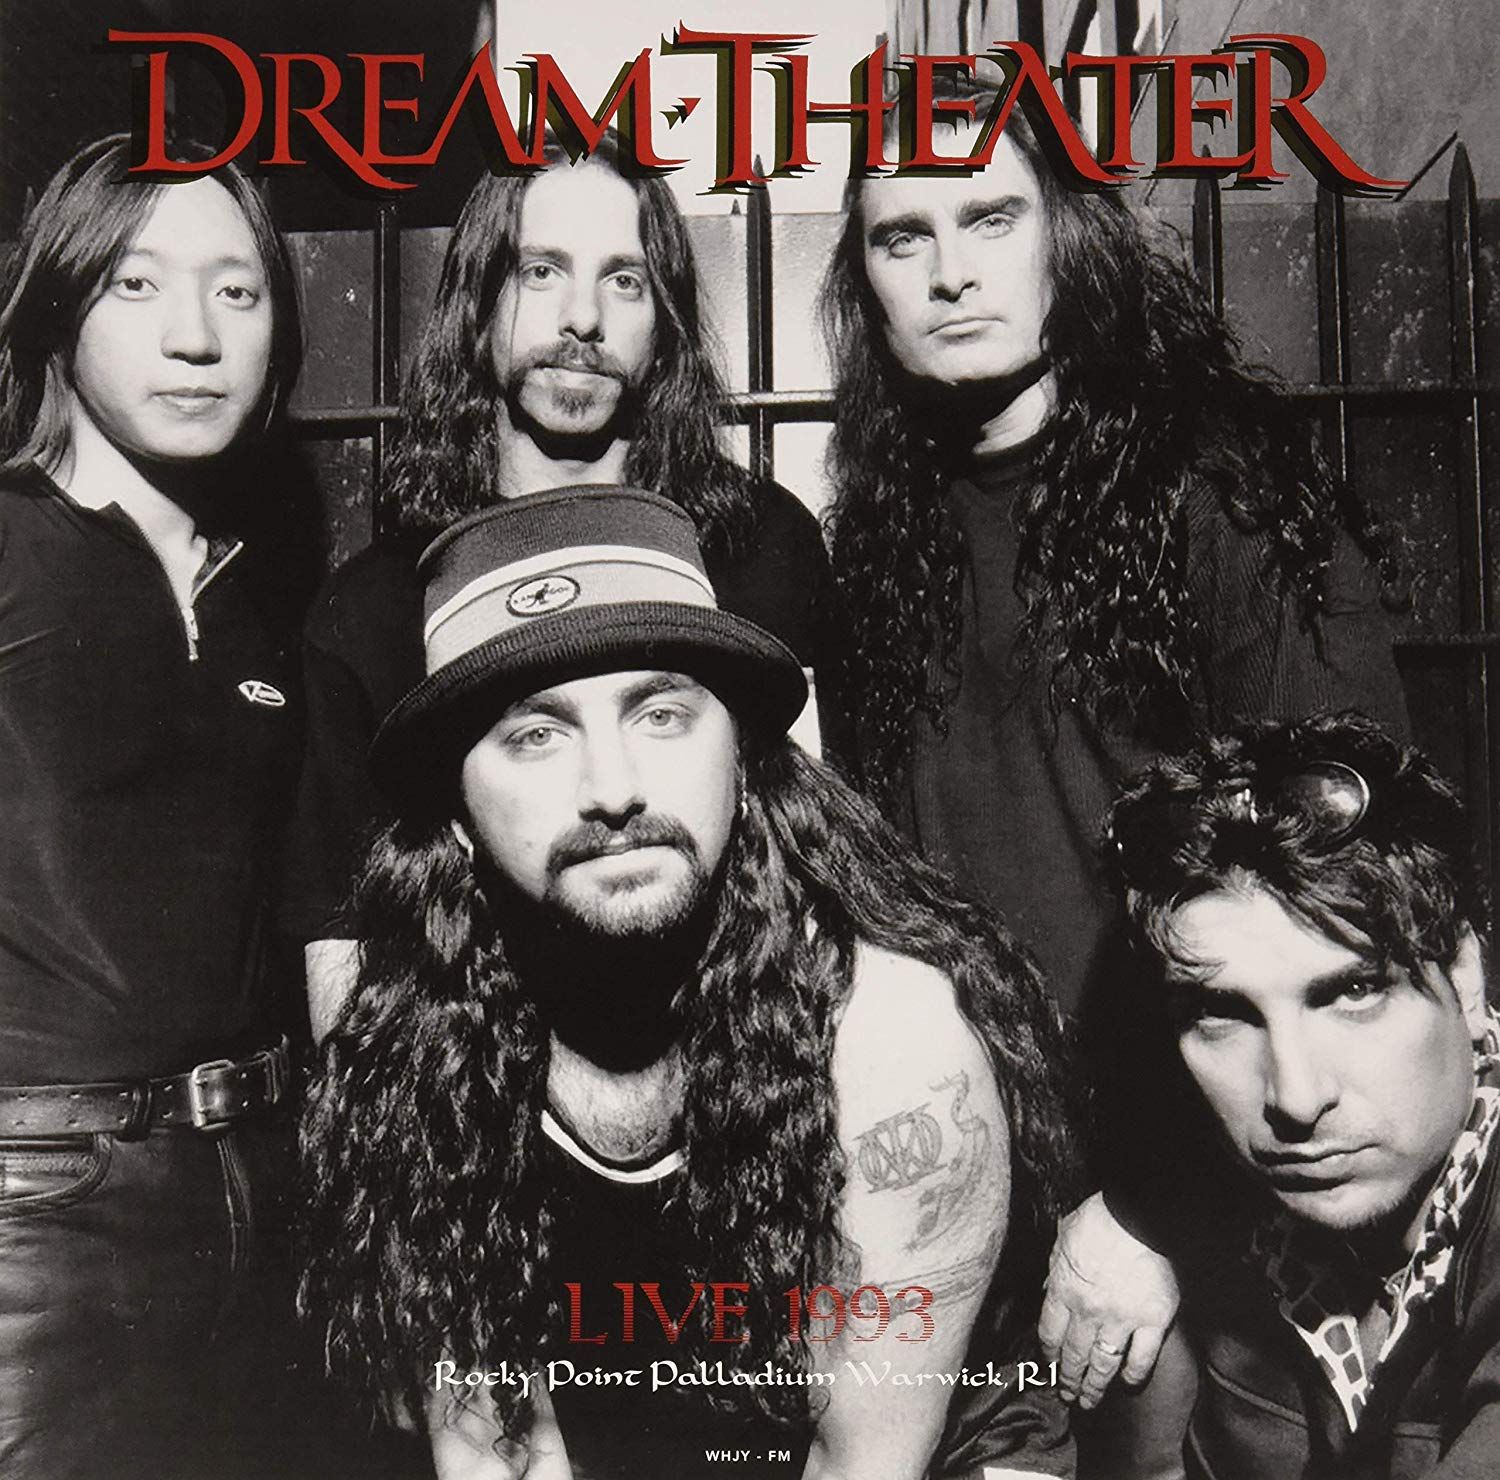 Группа dreams theatre. Группа Dream Theater. Dream Theater фото группы. Dream Theater 1993. Dream Theater 1992.